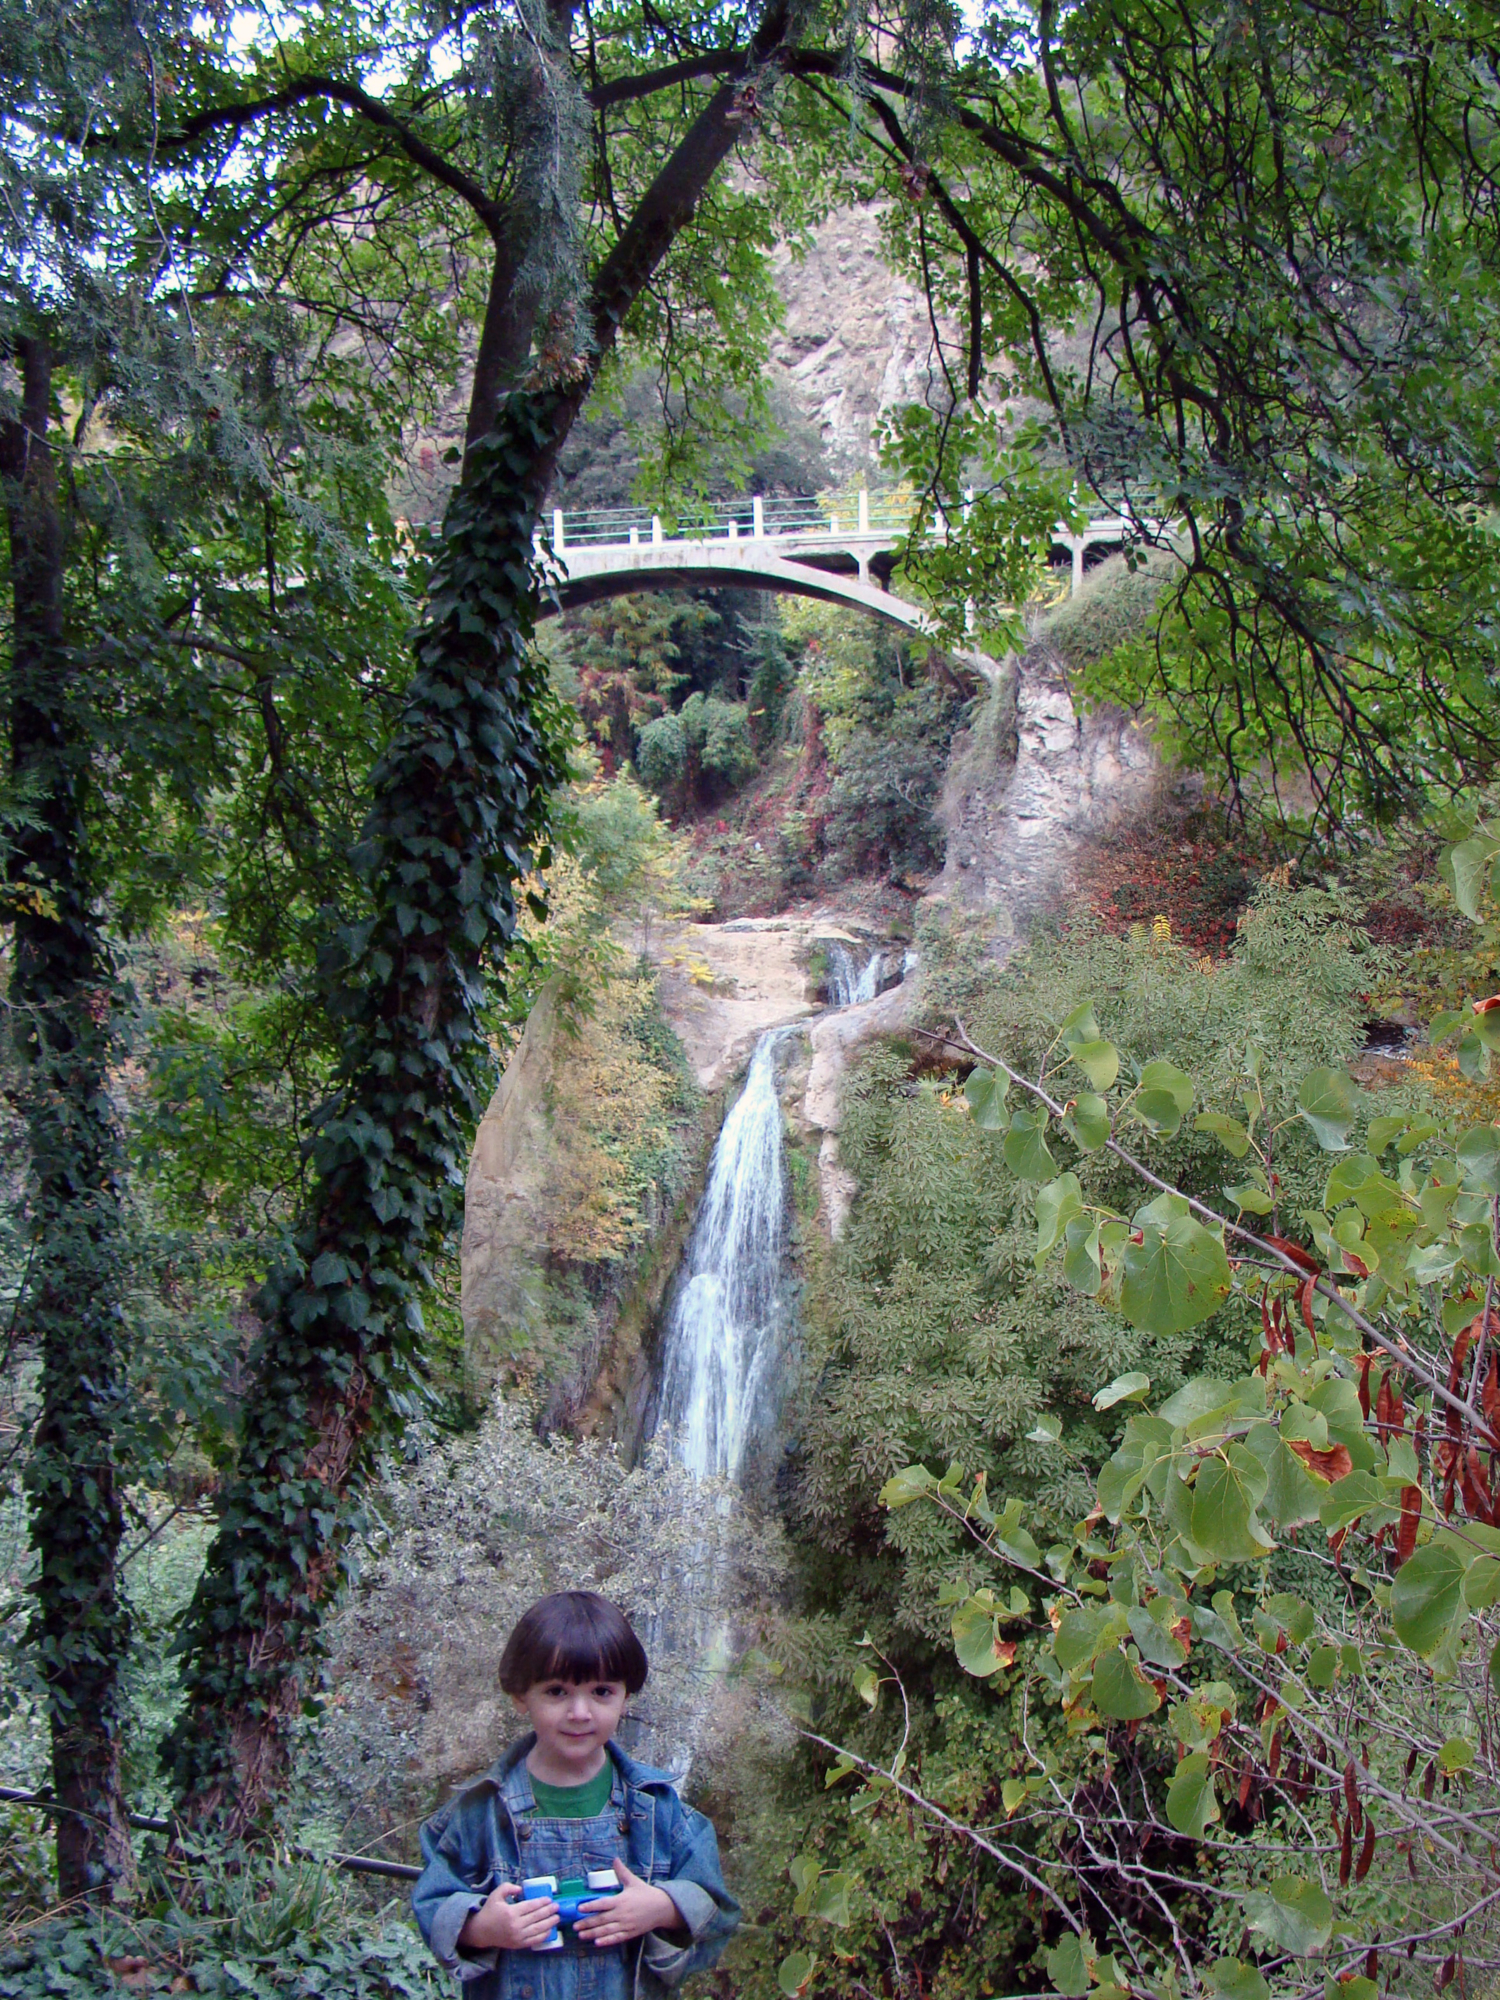 мост над водопадом